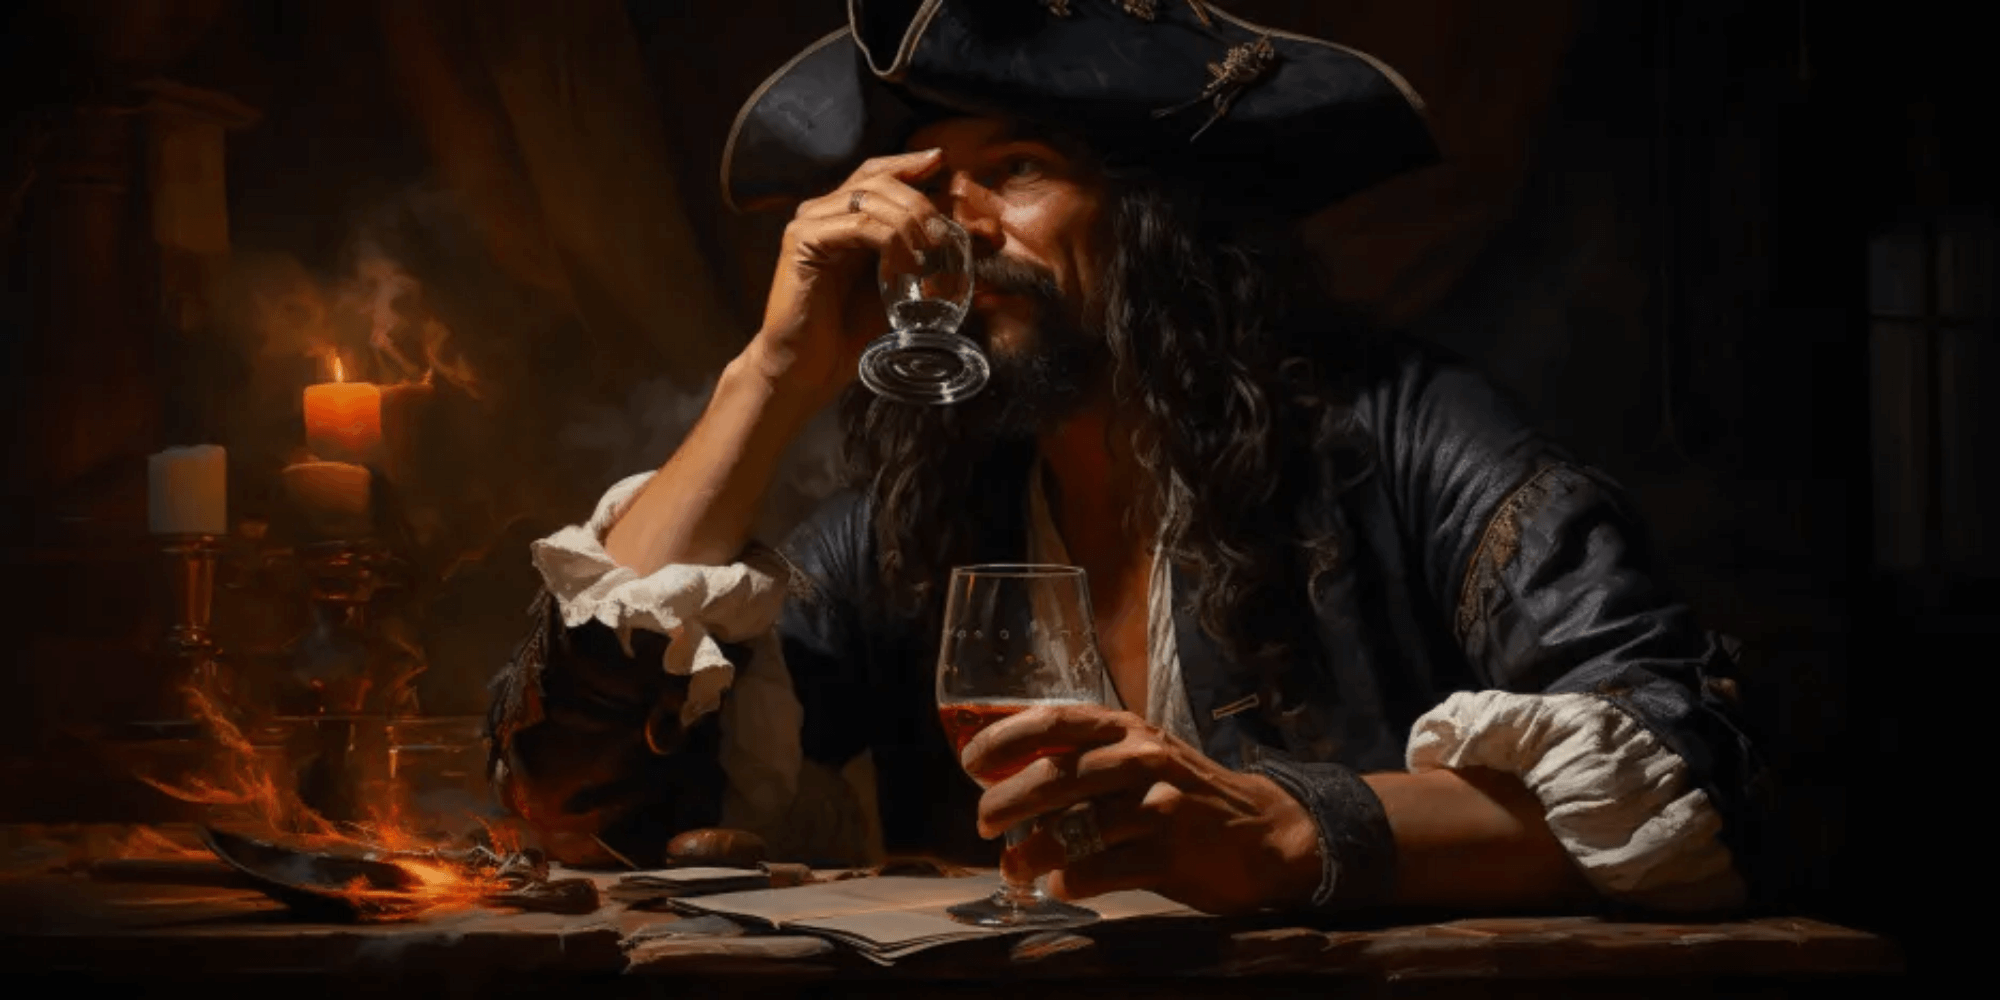 Rum Tasting - Ein Abend zum Experten